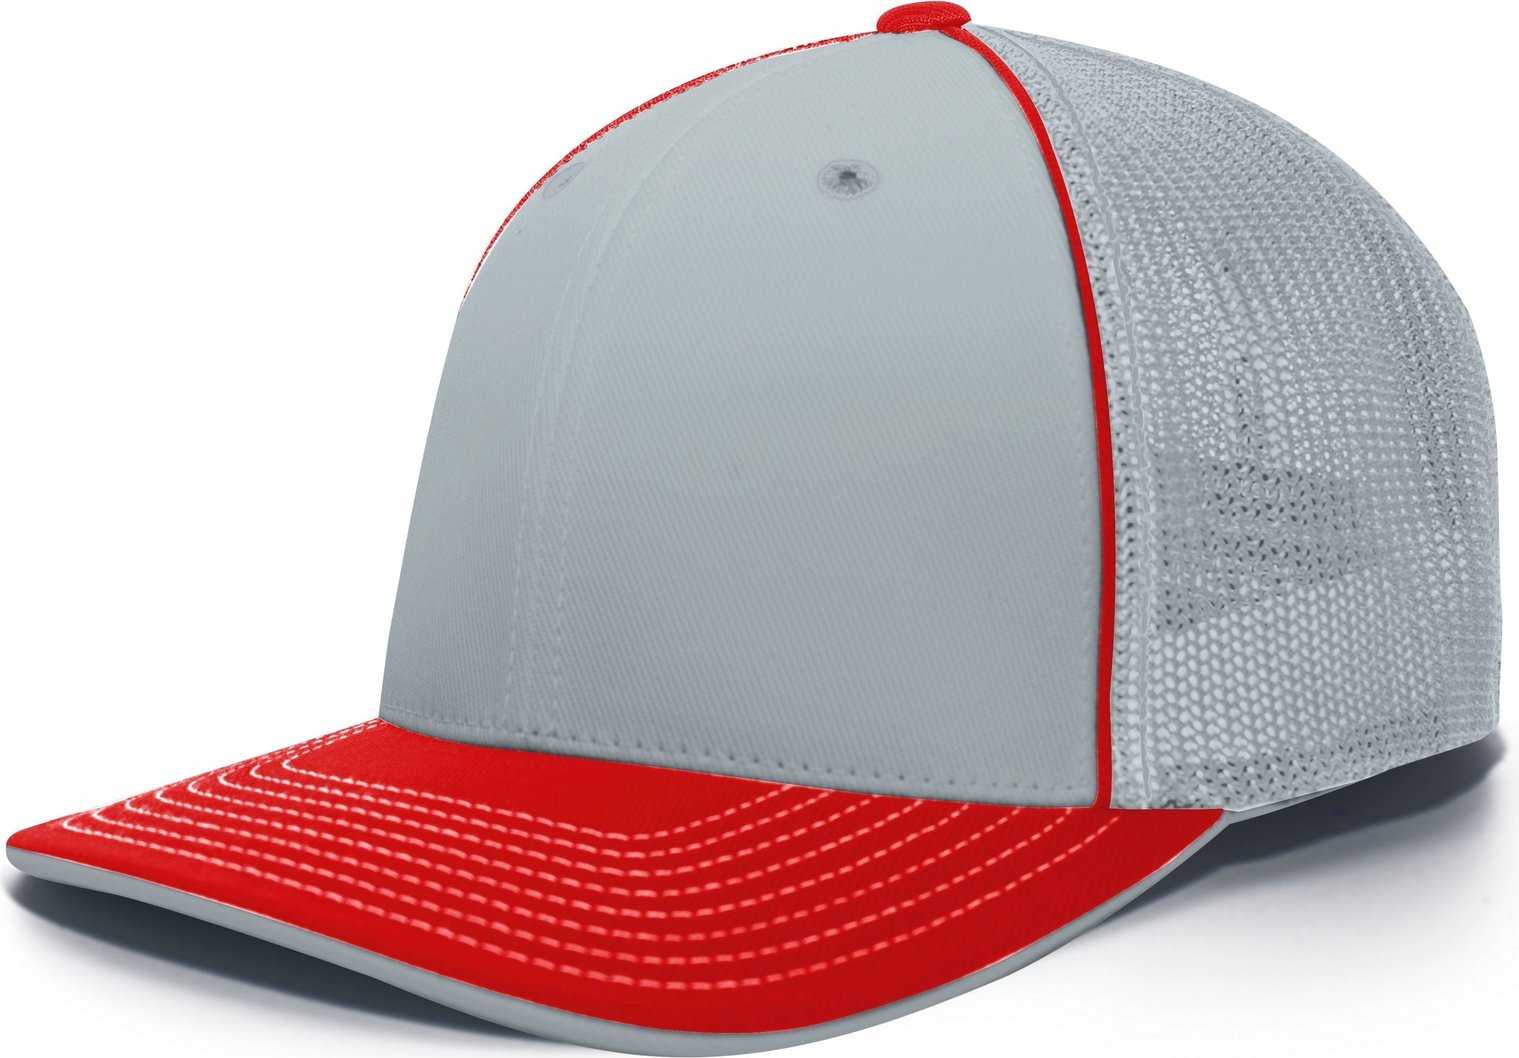 Pacific Headwear 404M Trucker Flexfit Cap - Silver Red - HIT a Double